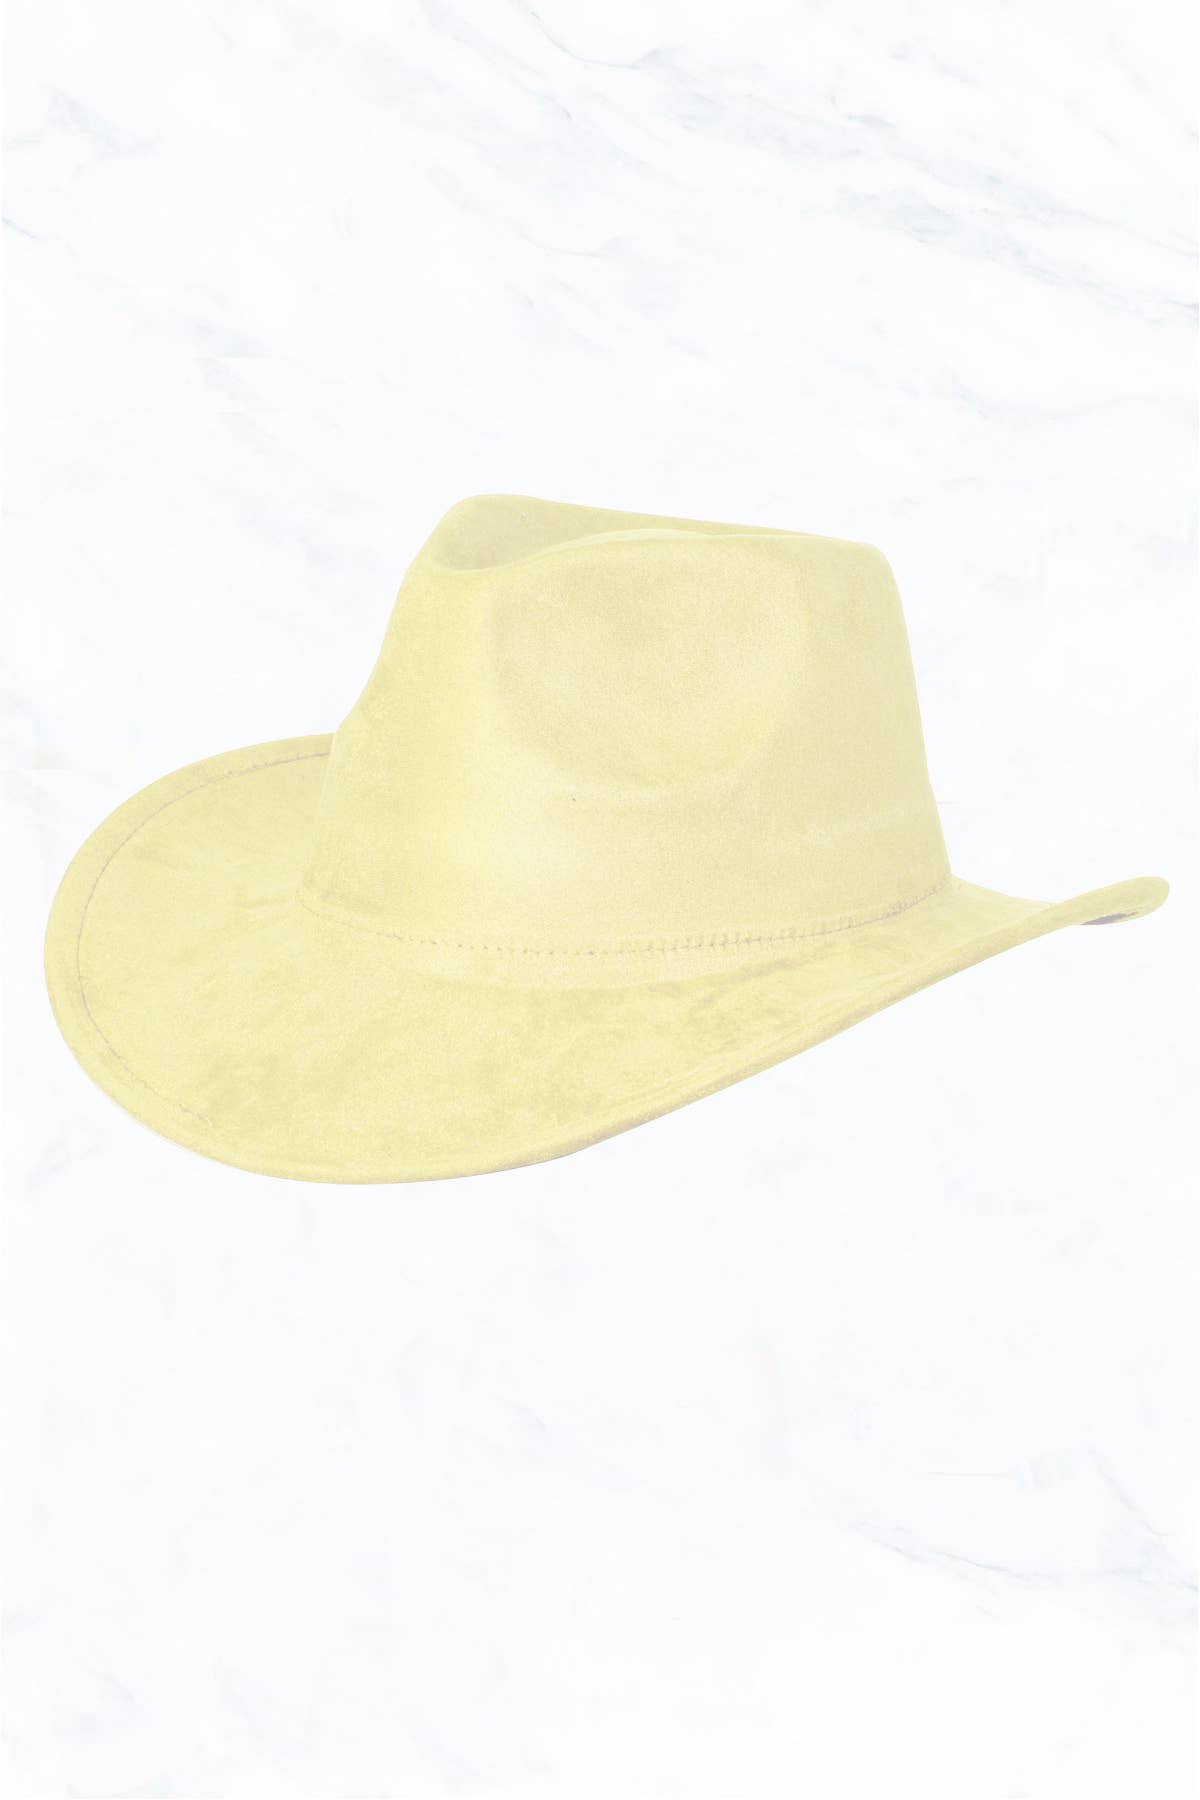 Suzie Q USA - Suede Regular Cowboy Fedora Hat: Black